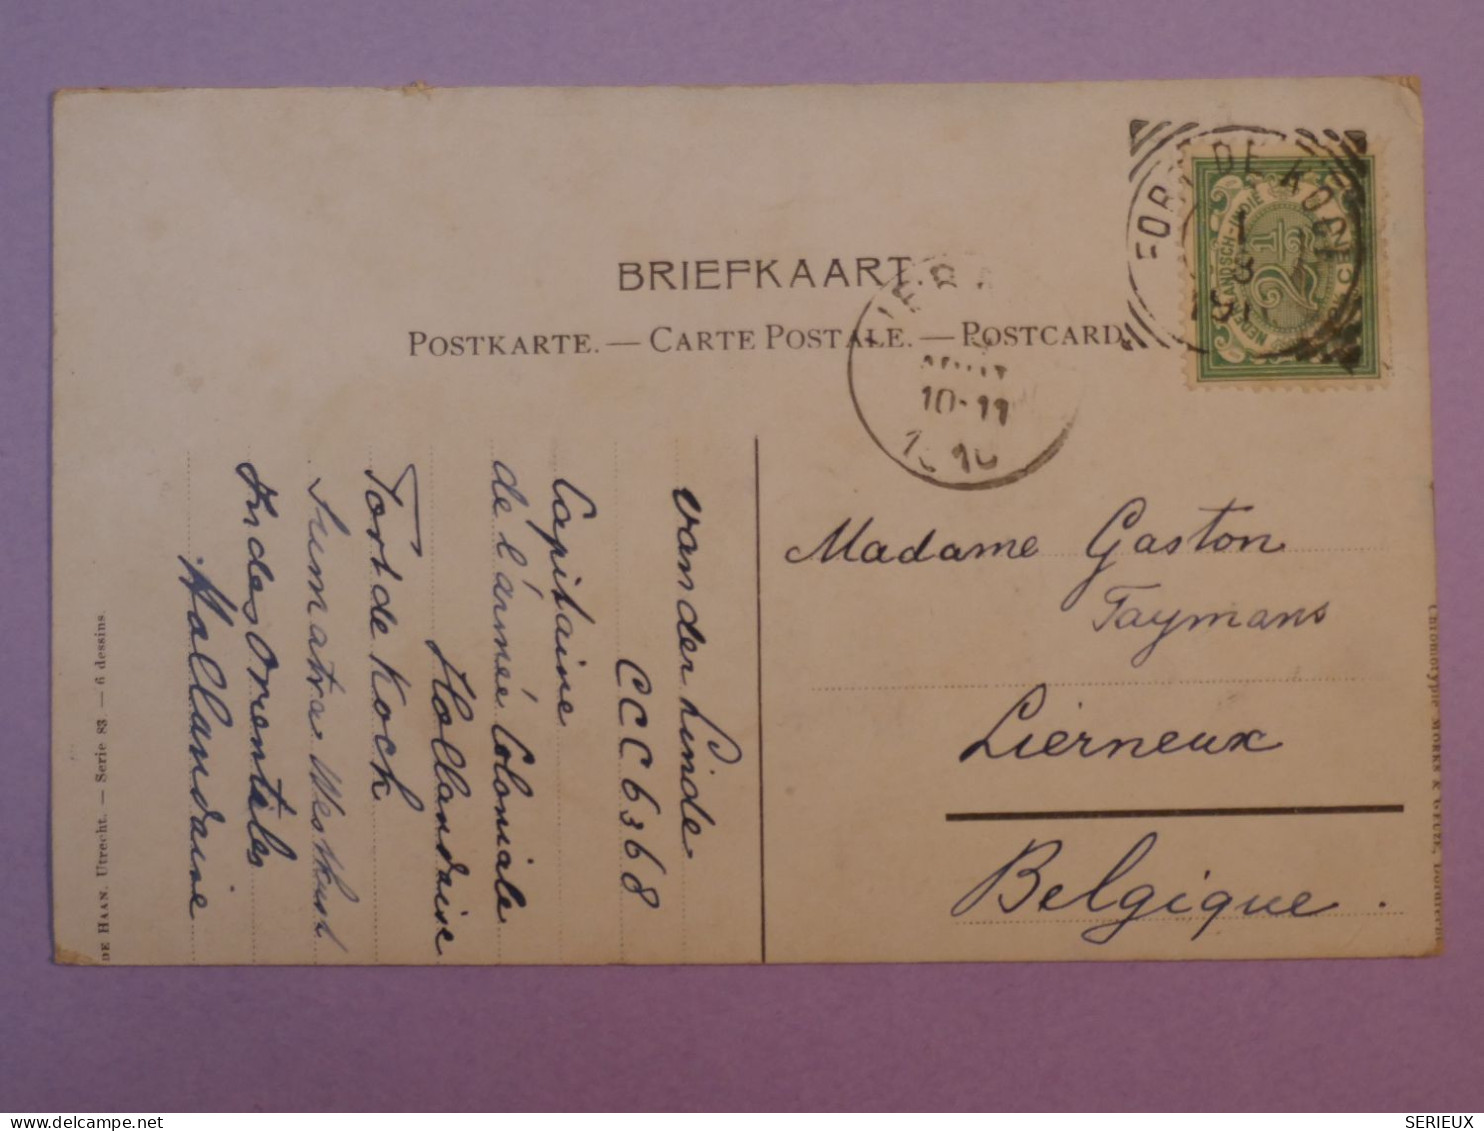 V45 INDE NEERLANDAISE BELLE  CARTE  1910  FORT DE KOCK SUMATRA  A  LIERNEUX  BELGIQUE  ++AFF. INTERESSANT+++++ + - Nederlands-Indië